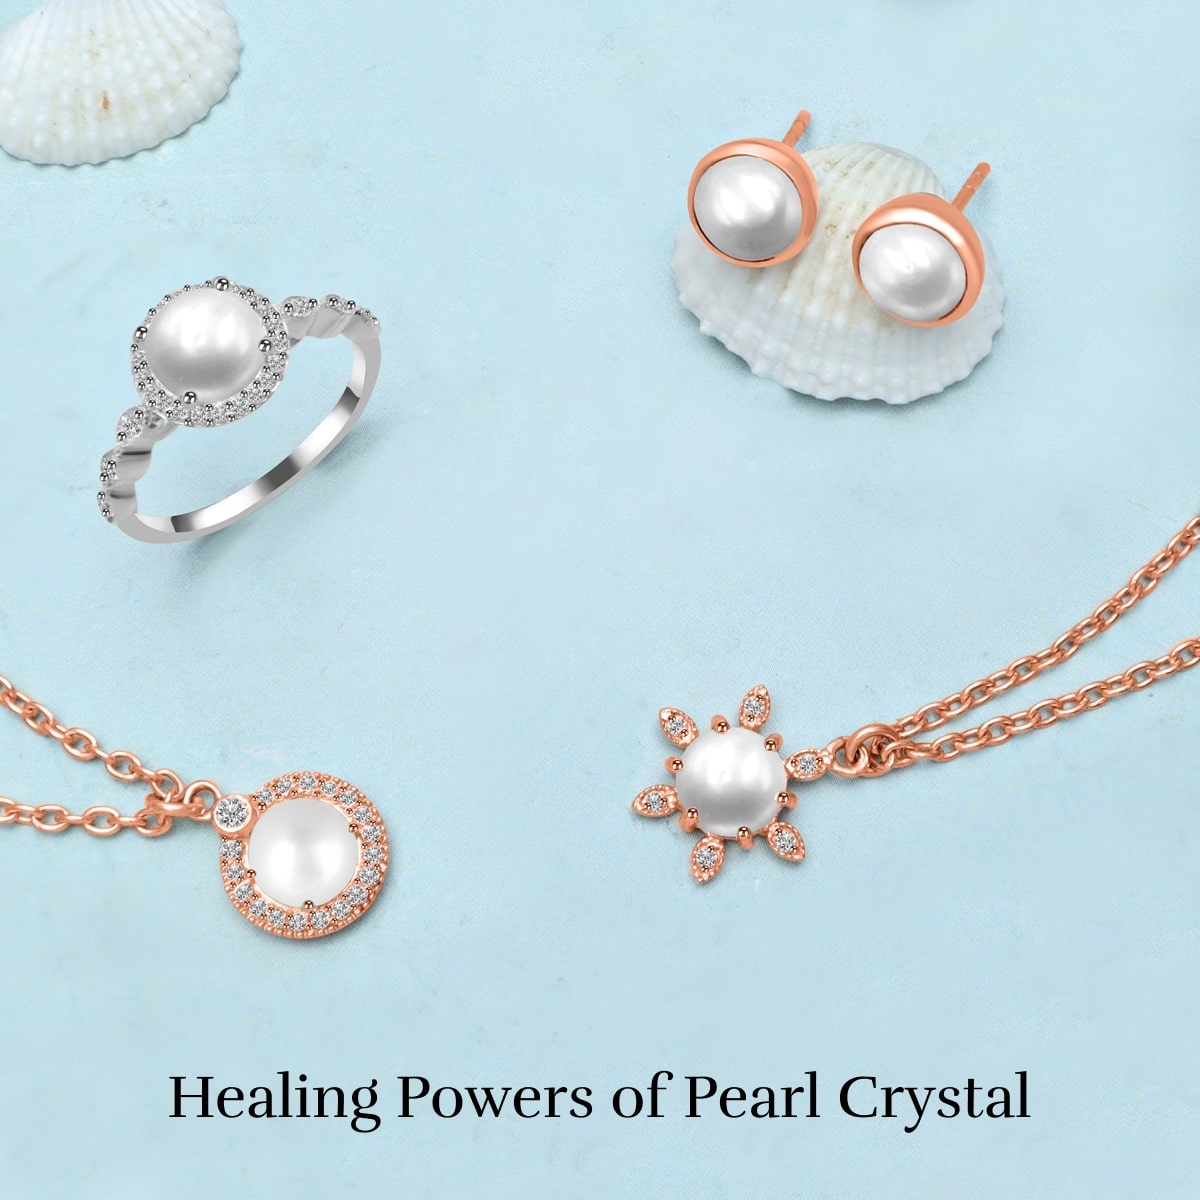 Healing Properties of Pearl Crystal